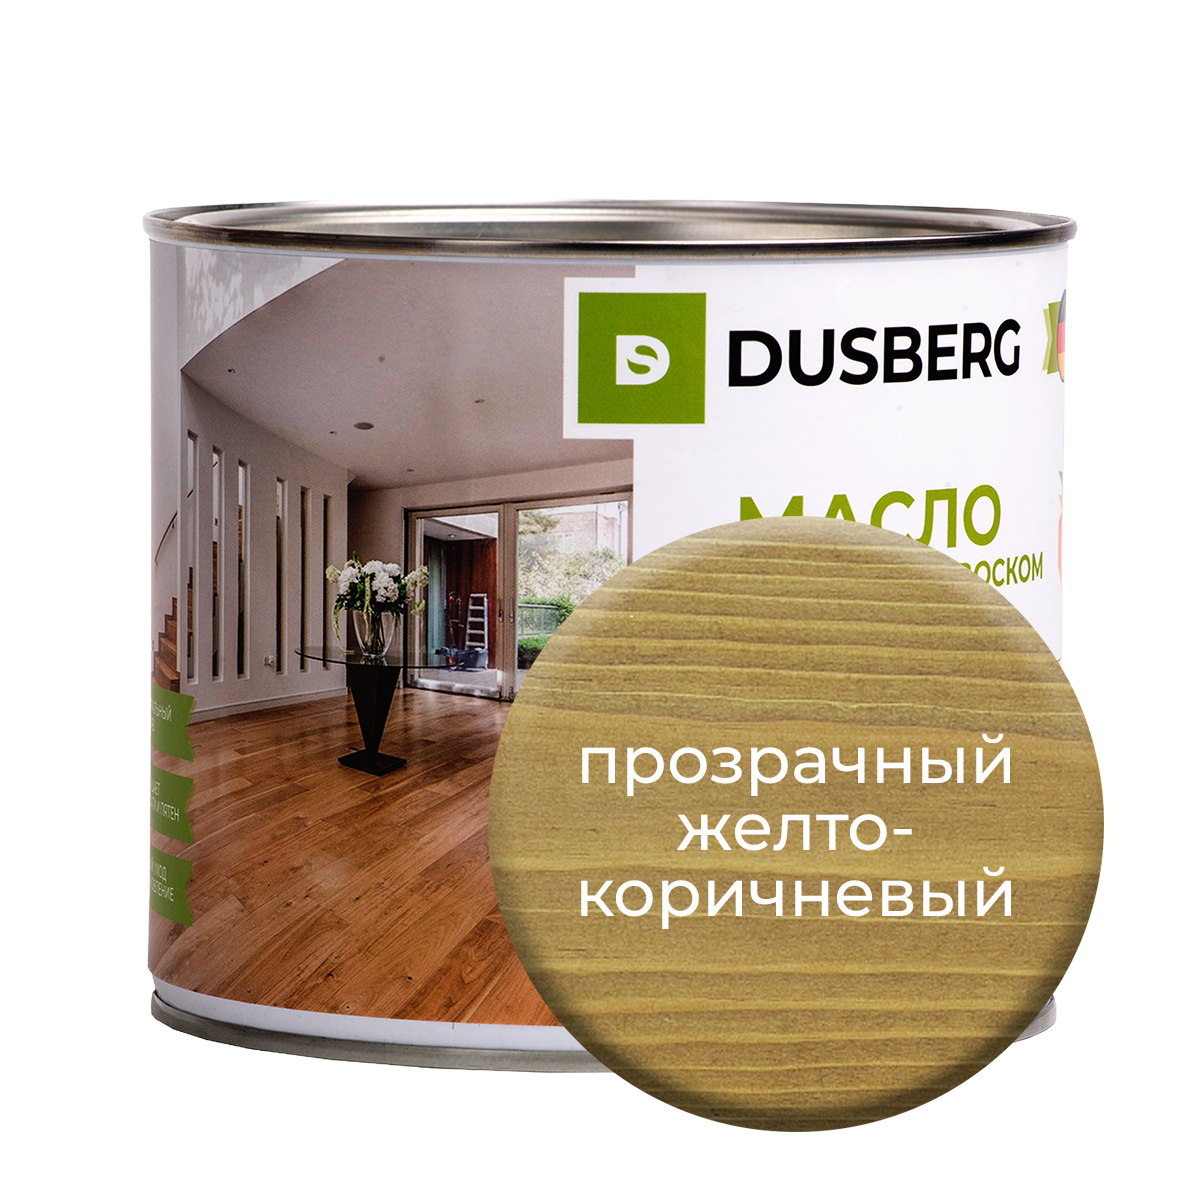 Масло Dusberg с твердым воском на бесцветной основе, 2 л Прозрачный желто-коричневый масло dusberg для дерева на бесцветной основе 750 мл светло коричневый